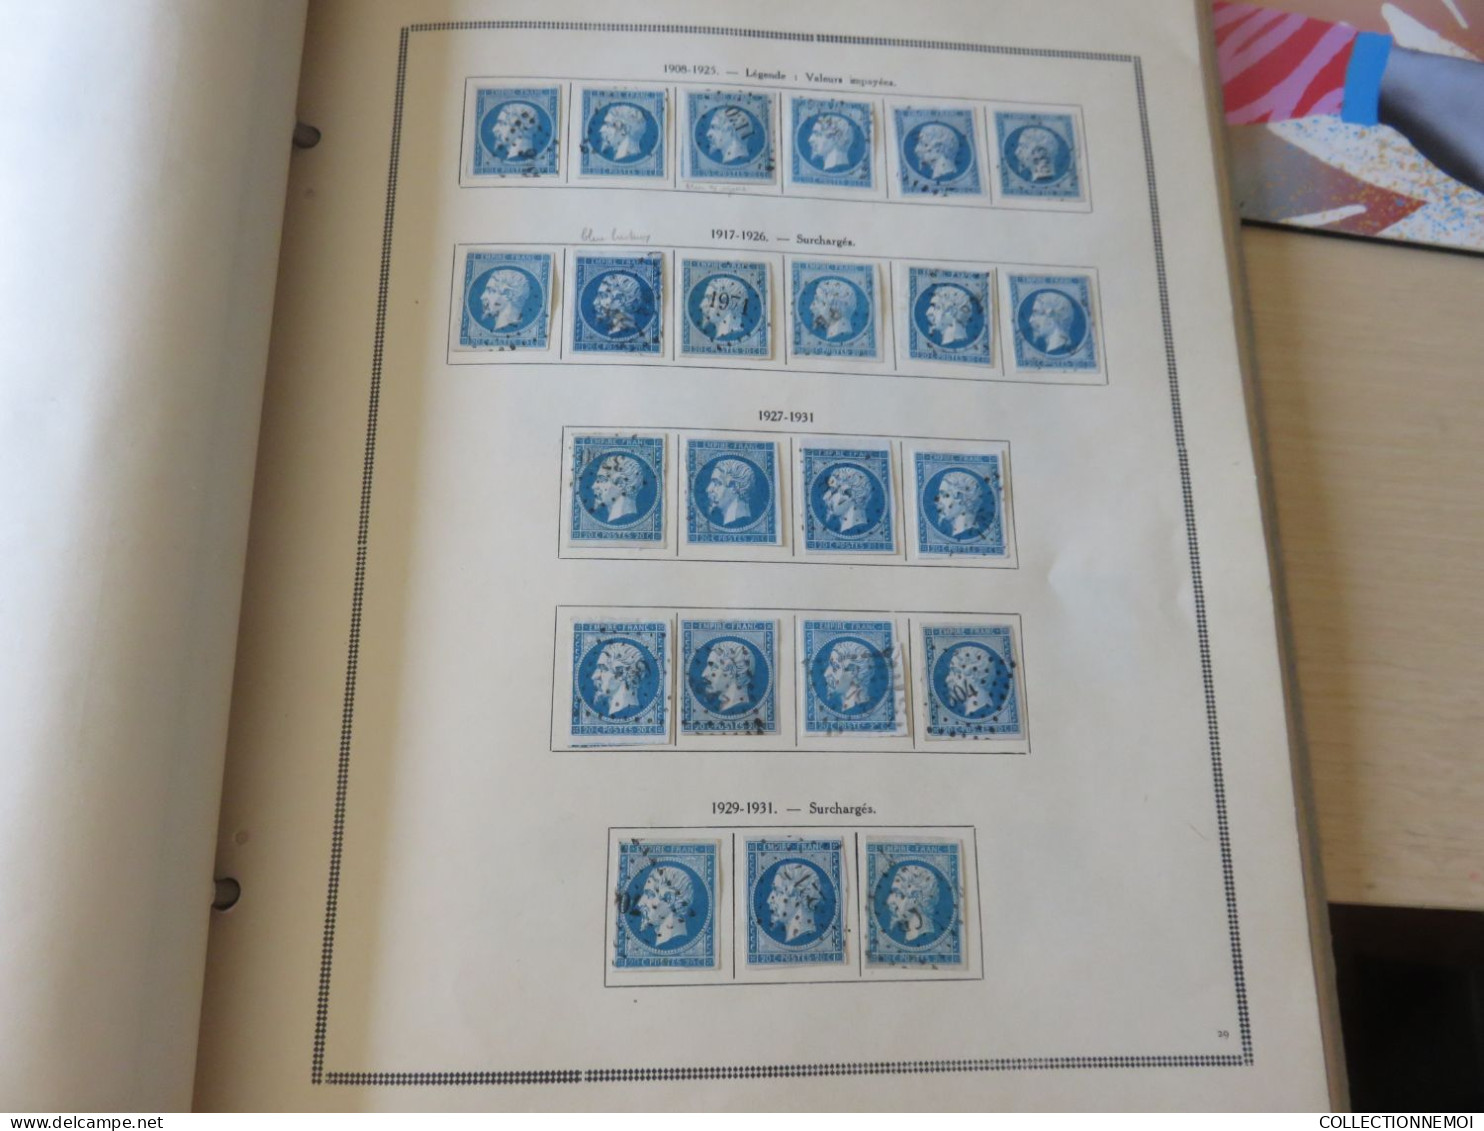 FRANCE CLASSIQUES,,,beaucoup plus +++++++++ de 400 timbres avant 1900